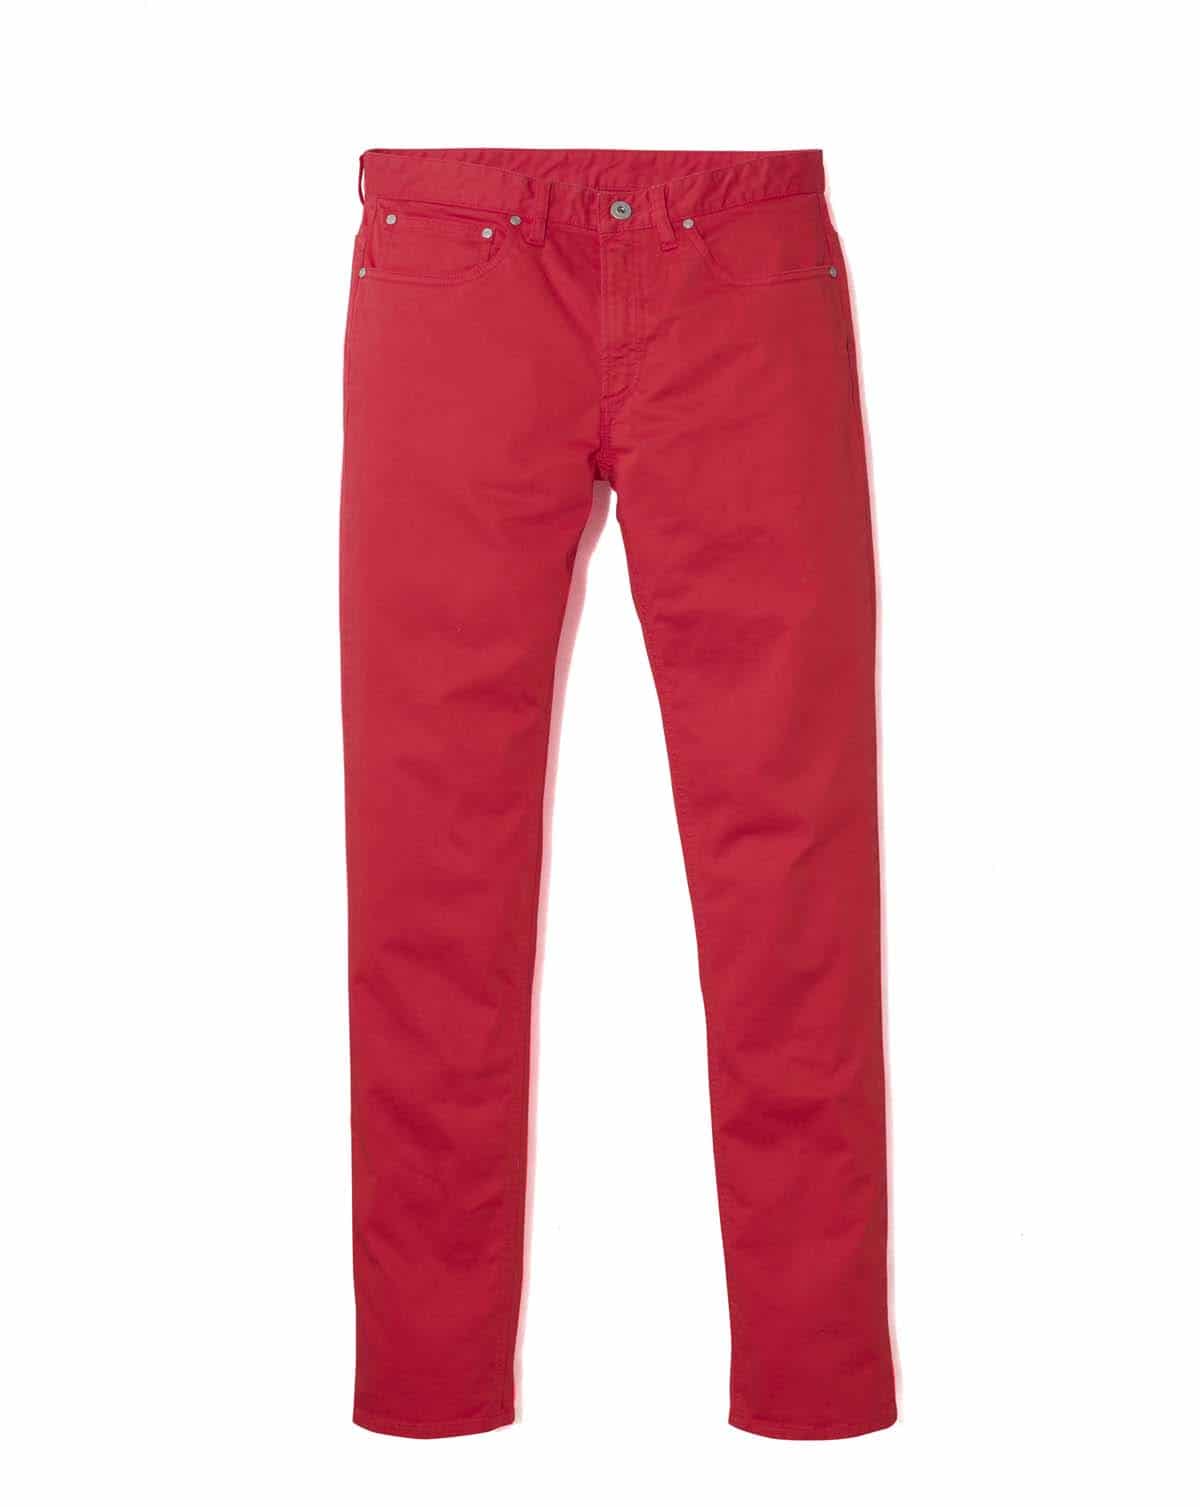 Pantalon rouge Celioclub